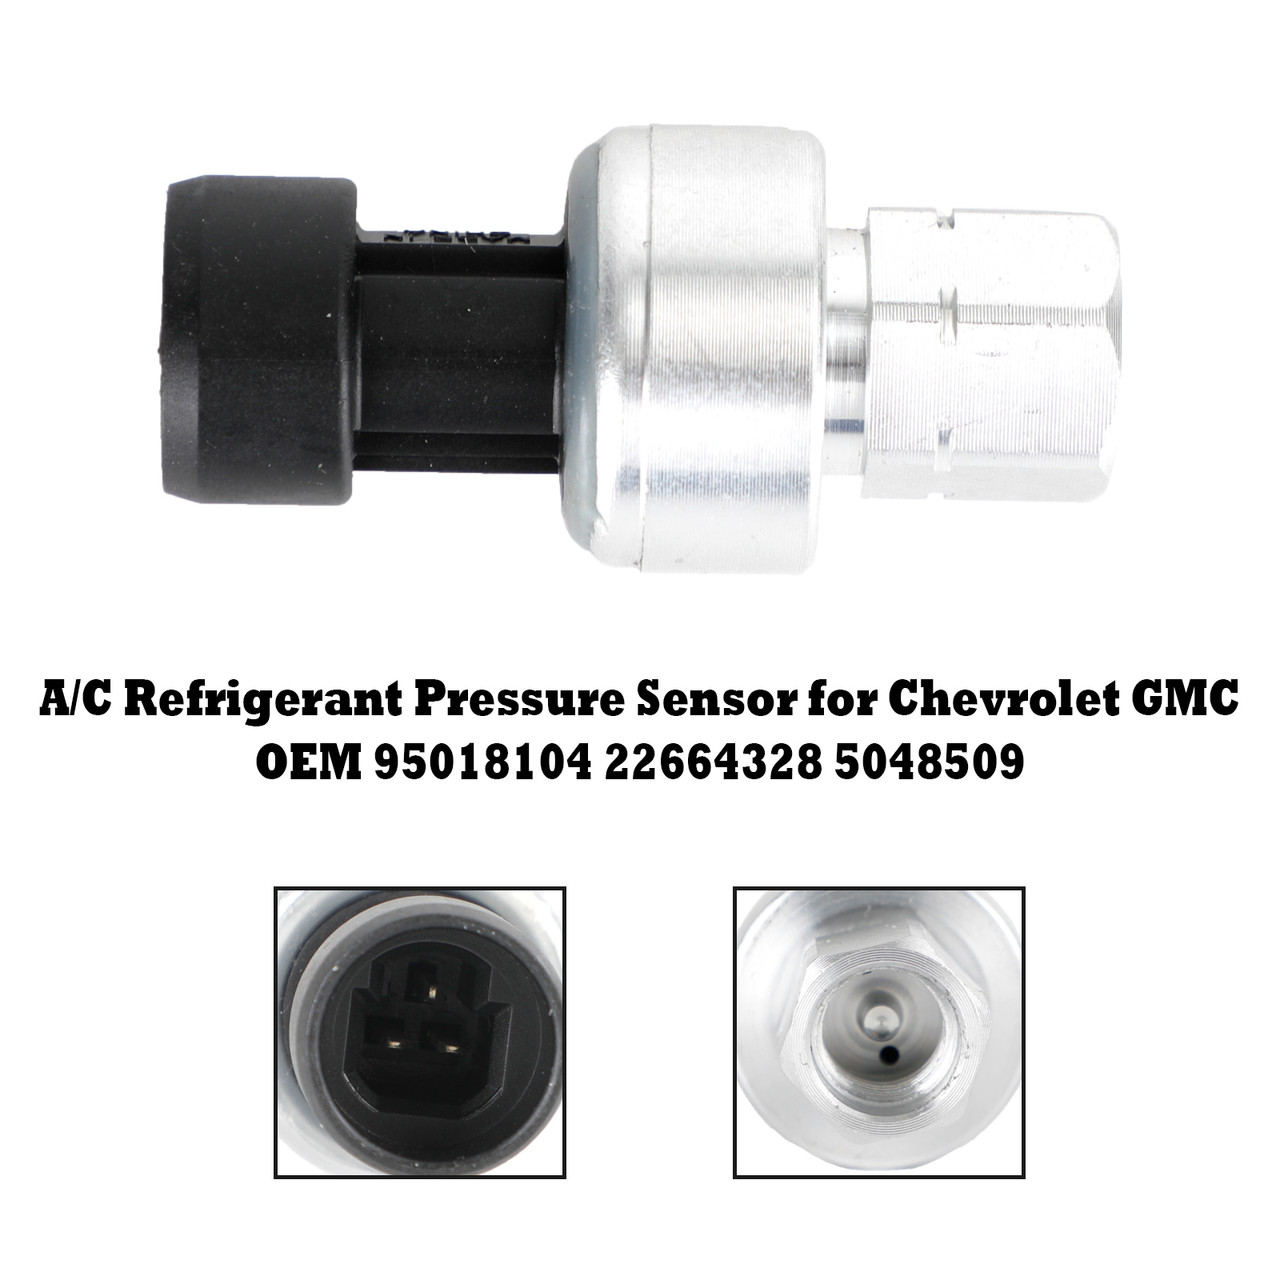 A/C Refrigerant Pressure Sensor for Chevrolet GMC 95018104 22664328 5048509